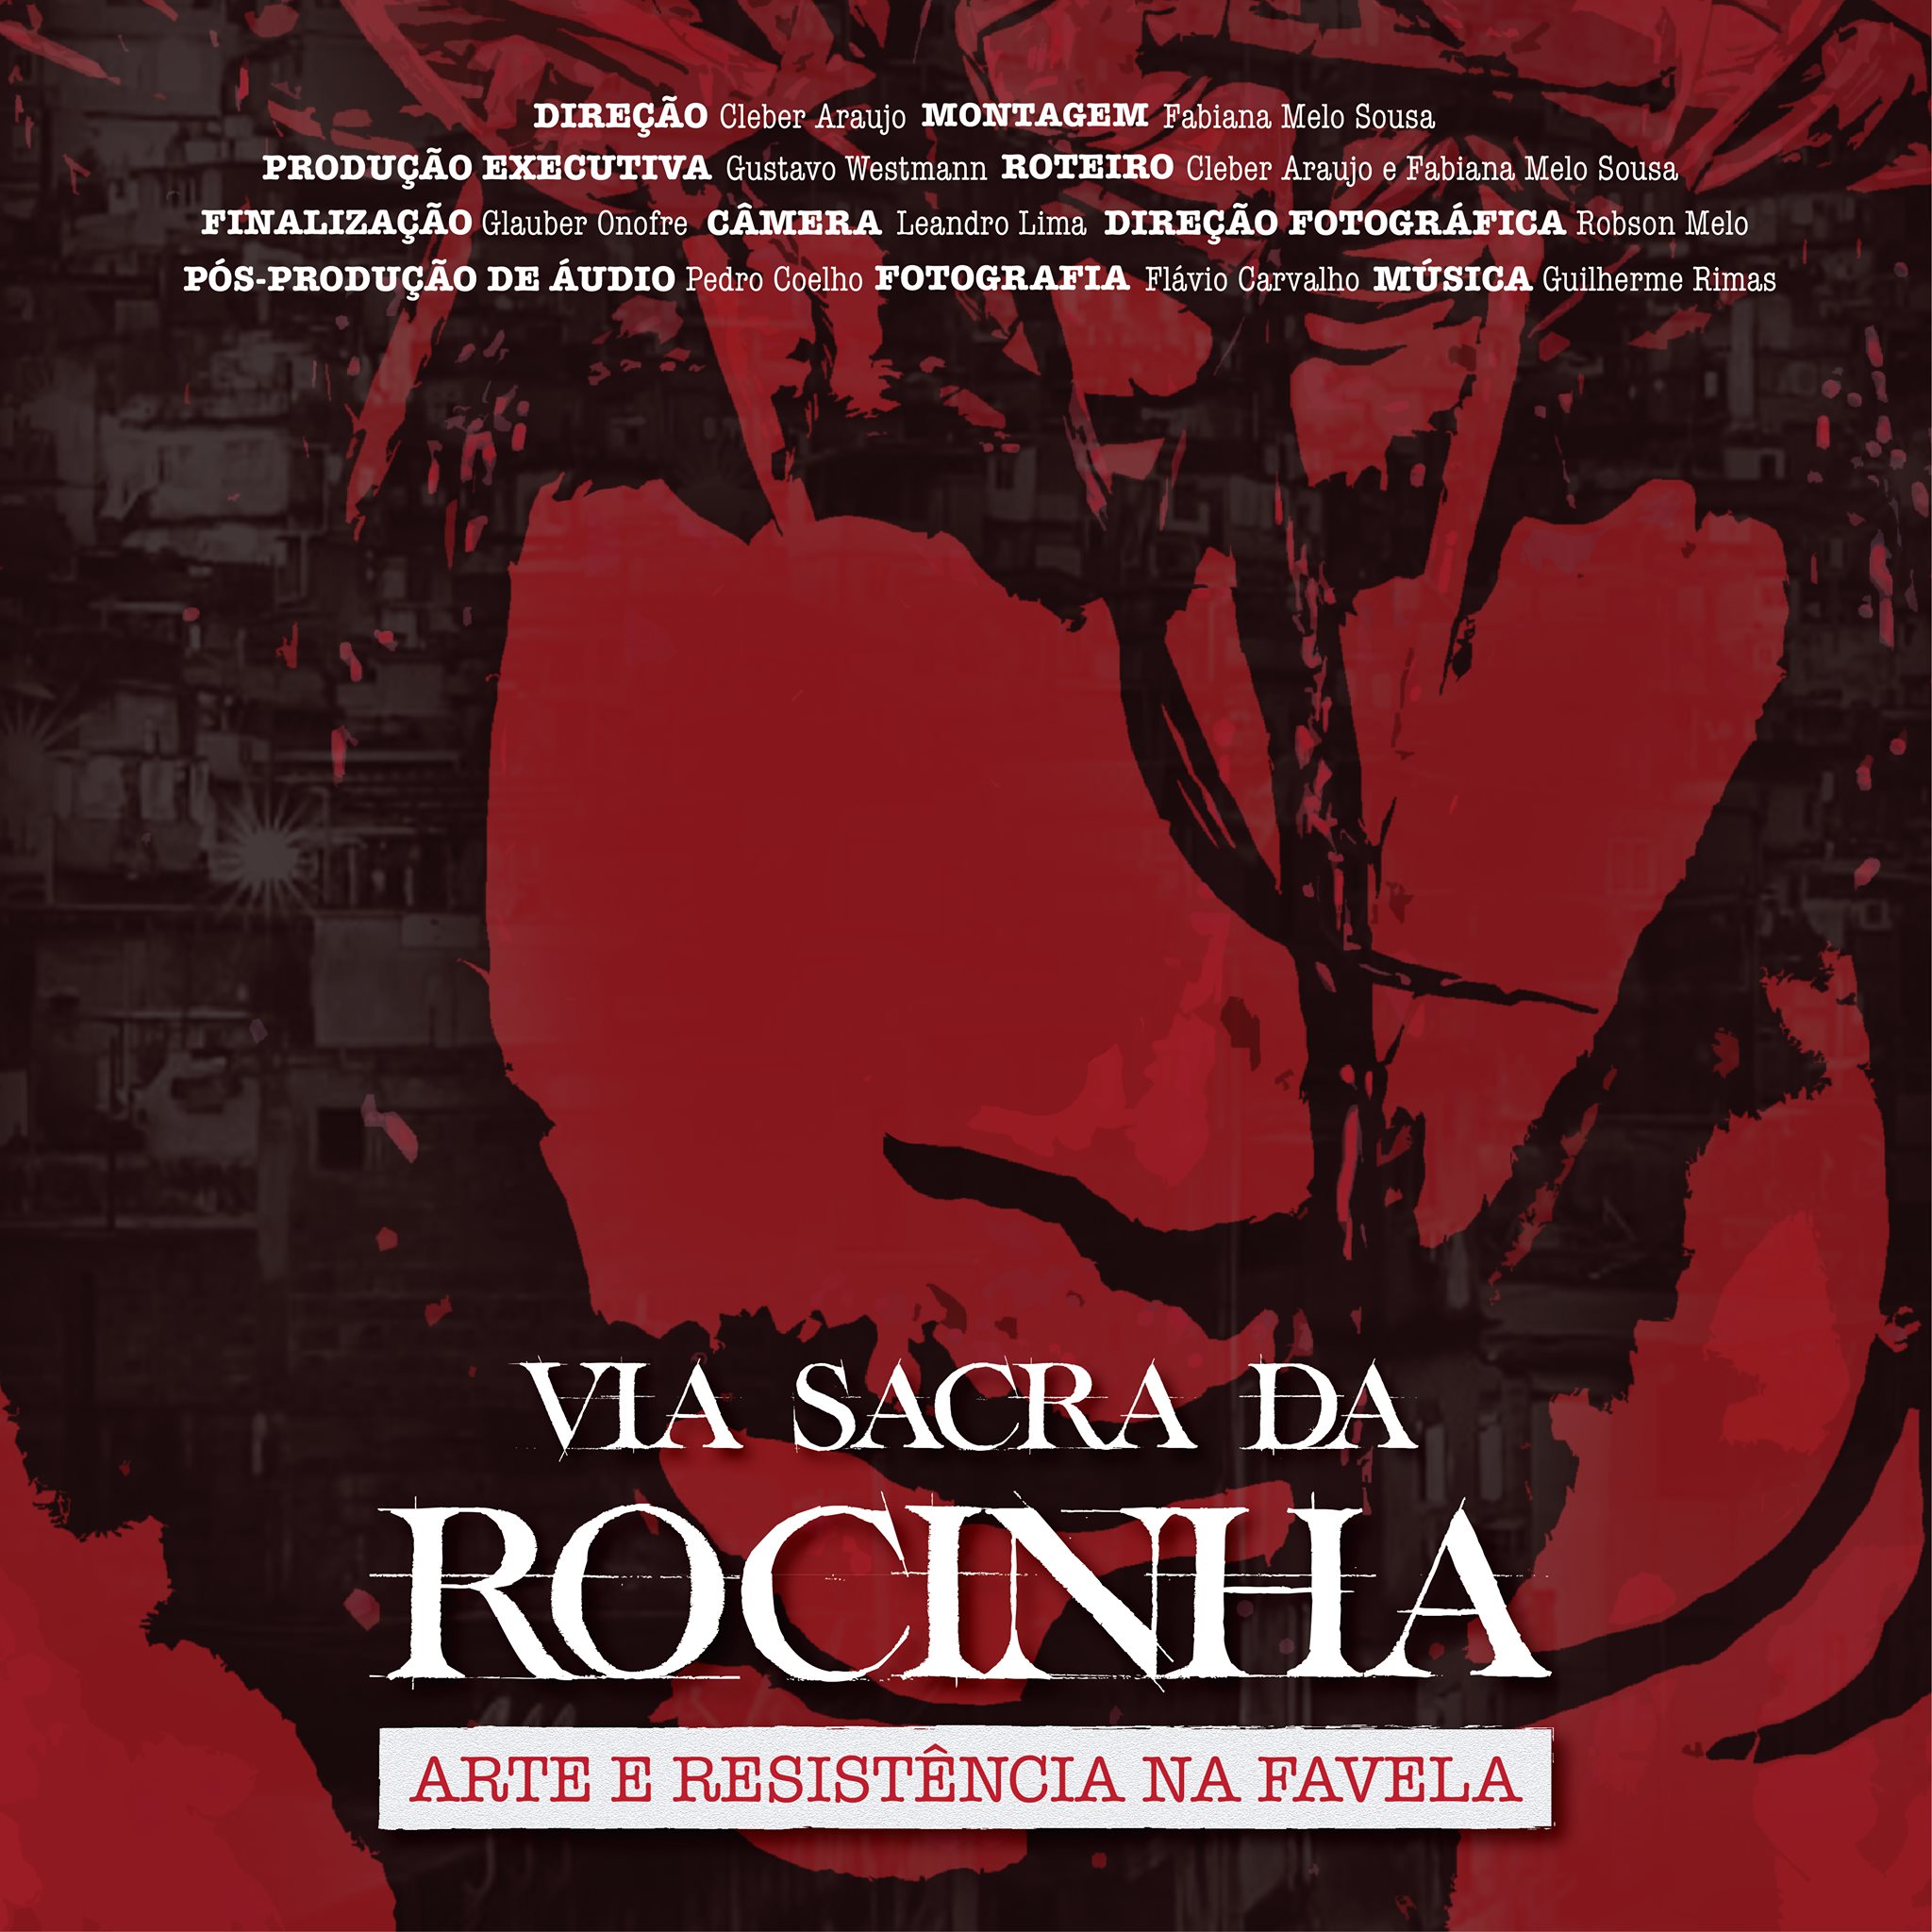 Documentário sobre o espetáculo da Via Sacra da Rocinha será exibido online